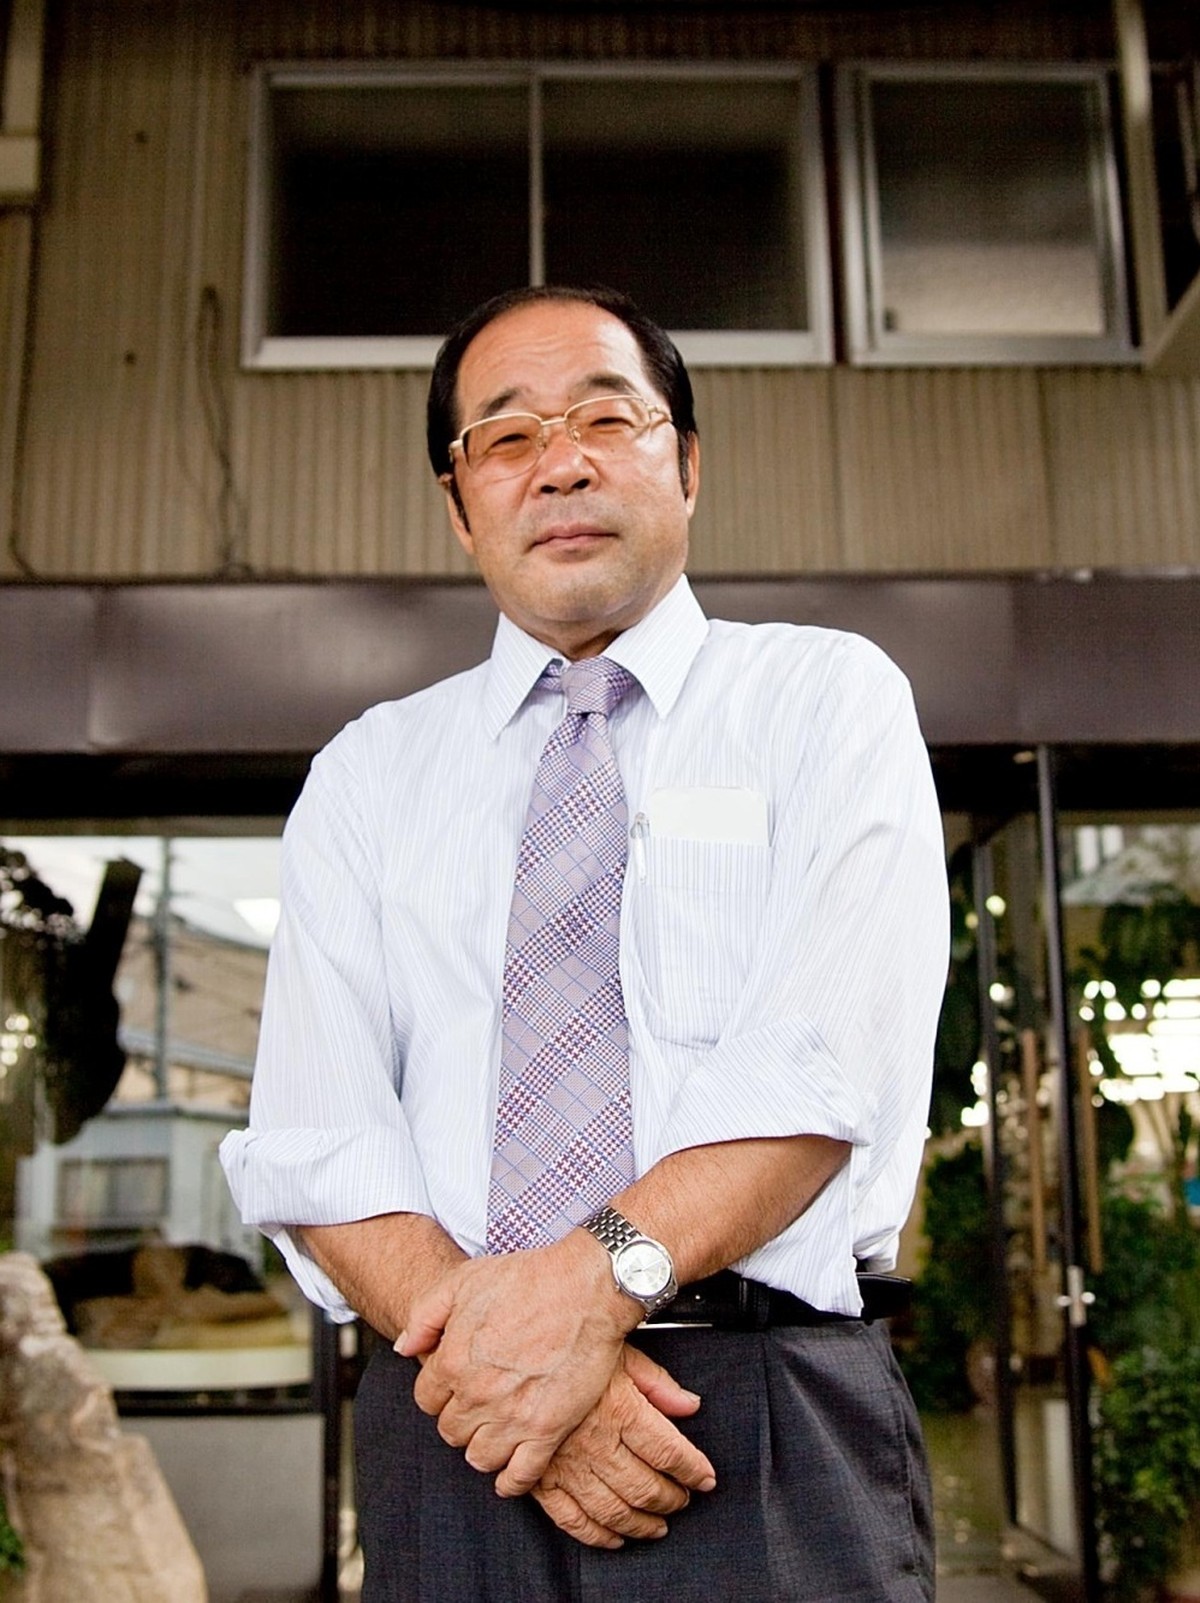 人気商品を販売する日本の店、ダイソーの創設者が日本で80歳で死去 | ビジネス